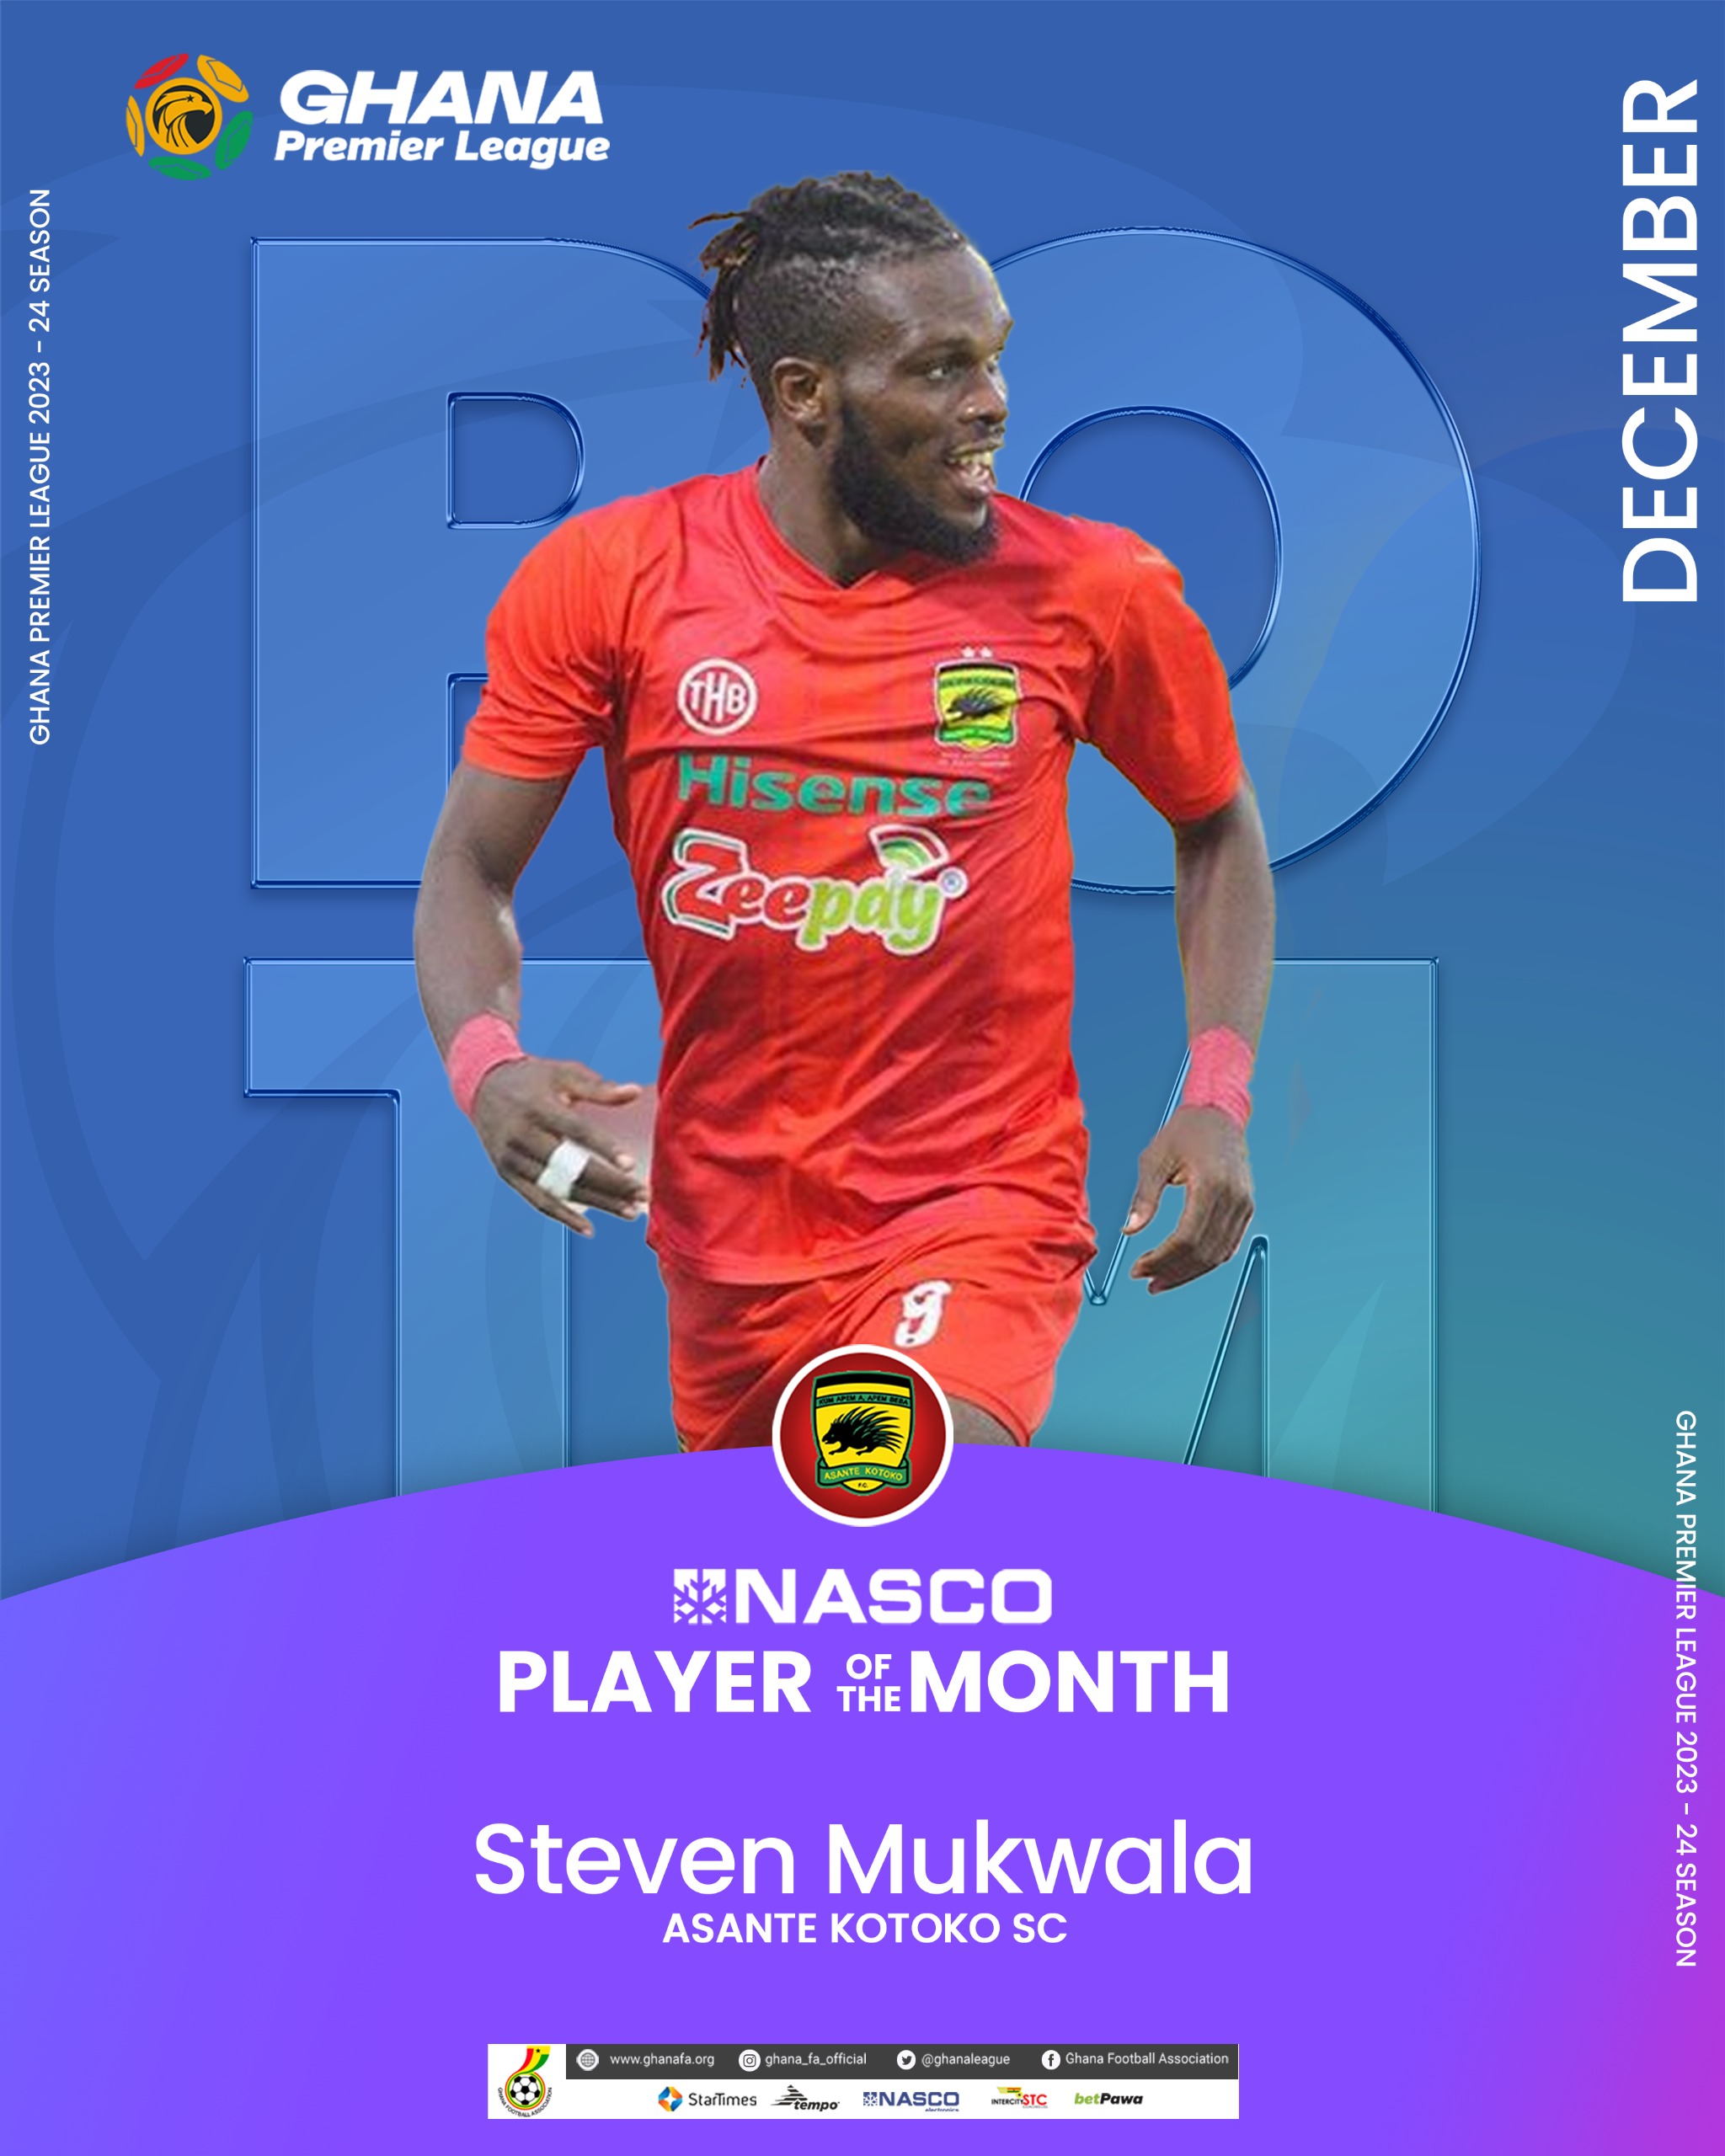 Steven Mukwala Desse picks NASCO Player of the Month Award for December